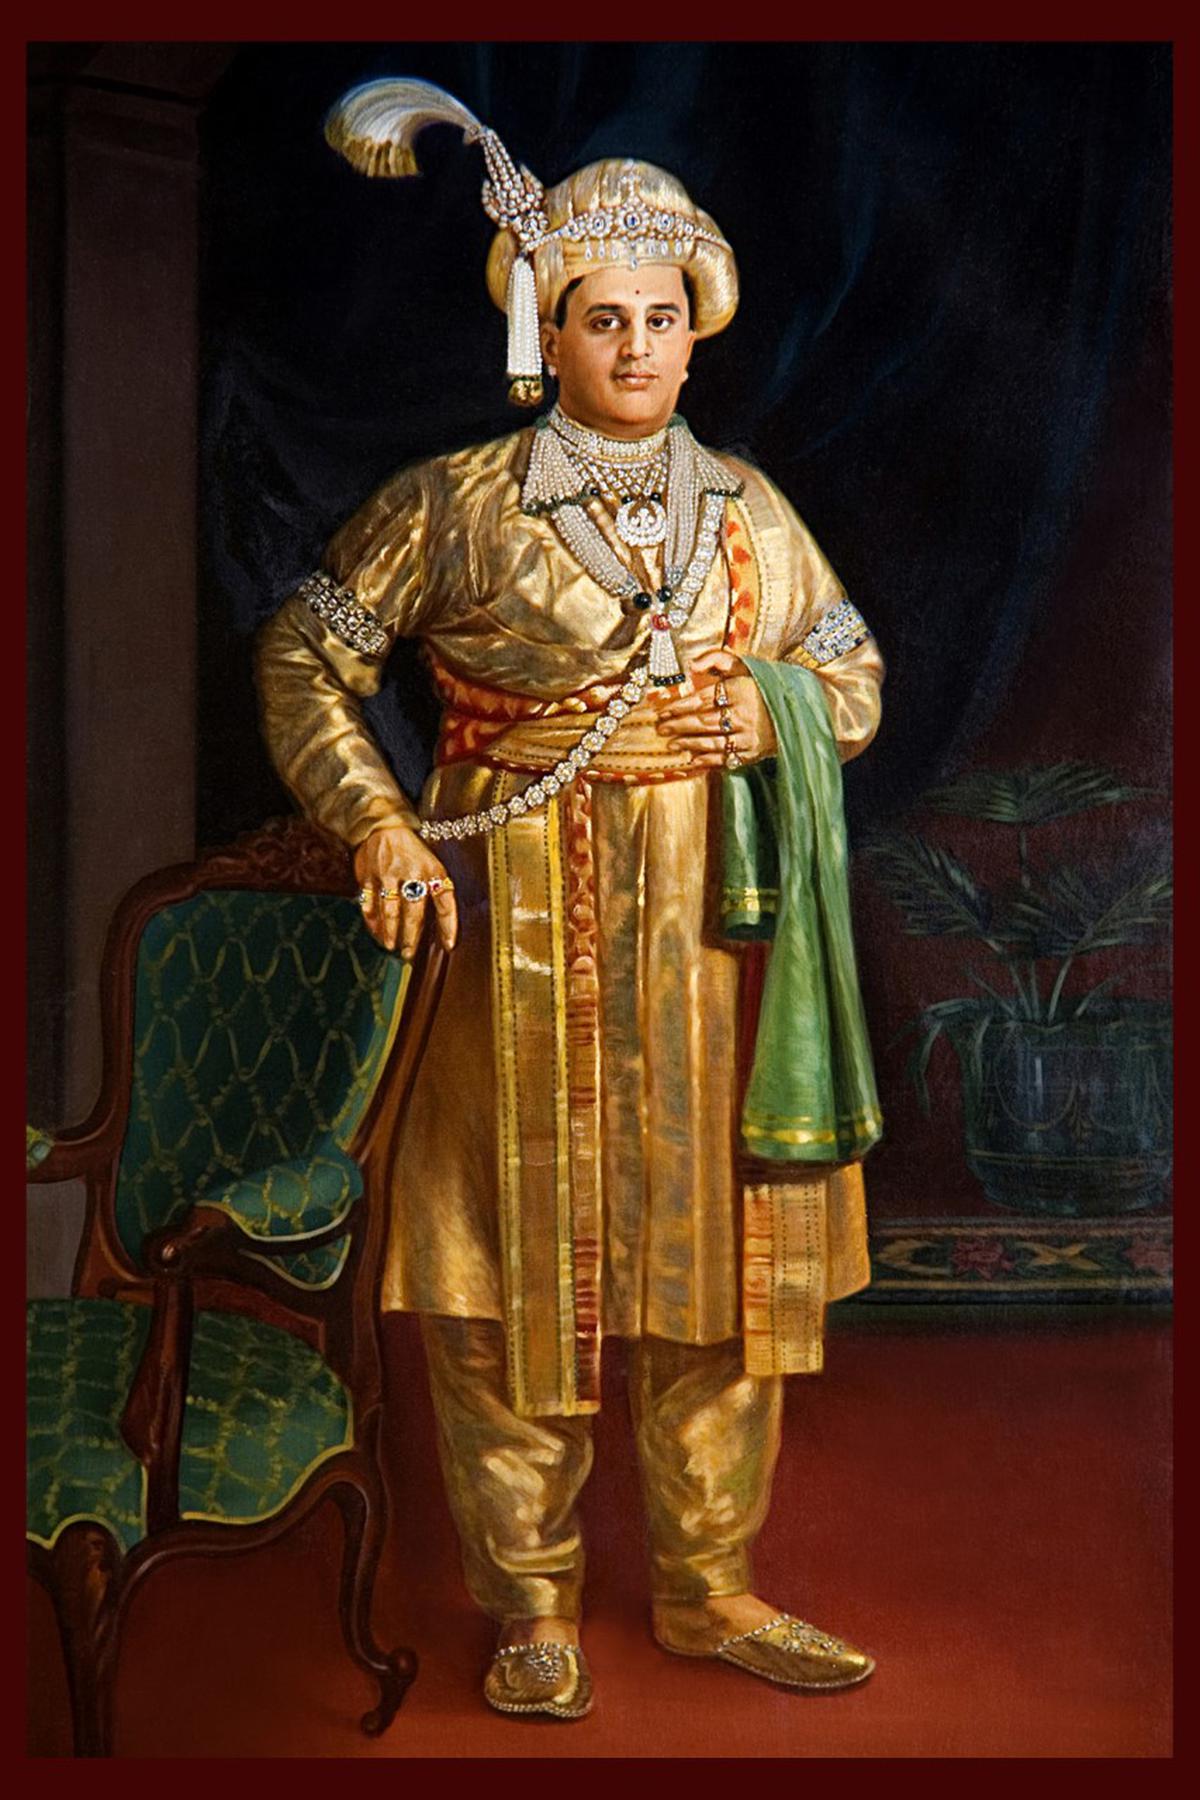 A portrait of the Maharaja of Mysuru, Jayachamaraja Wadiyar.